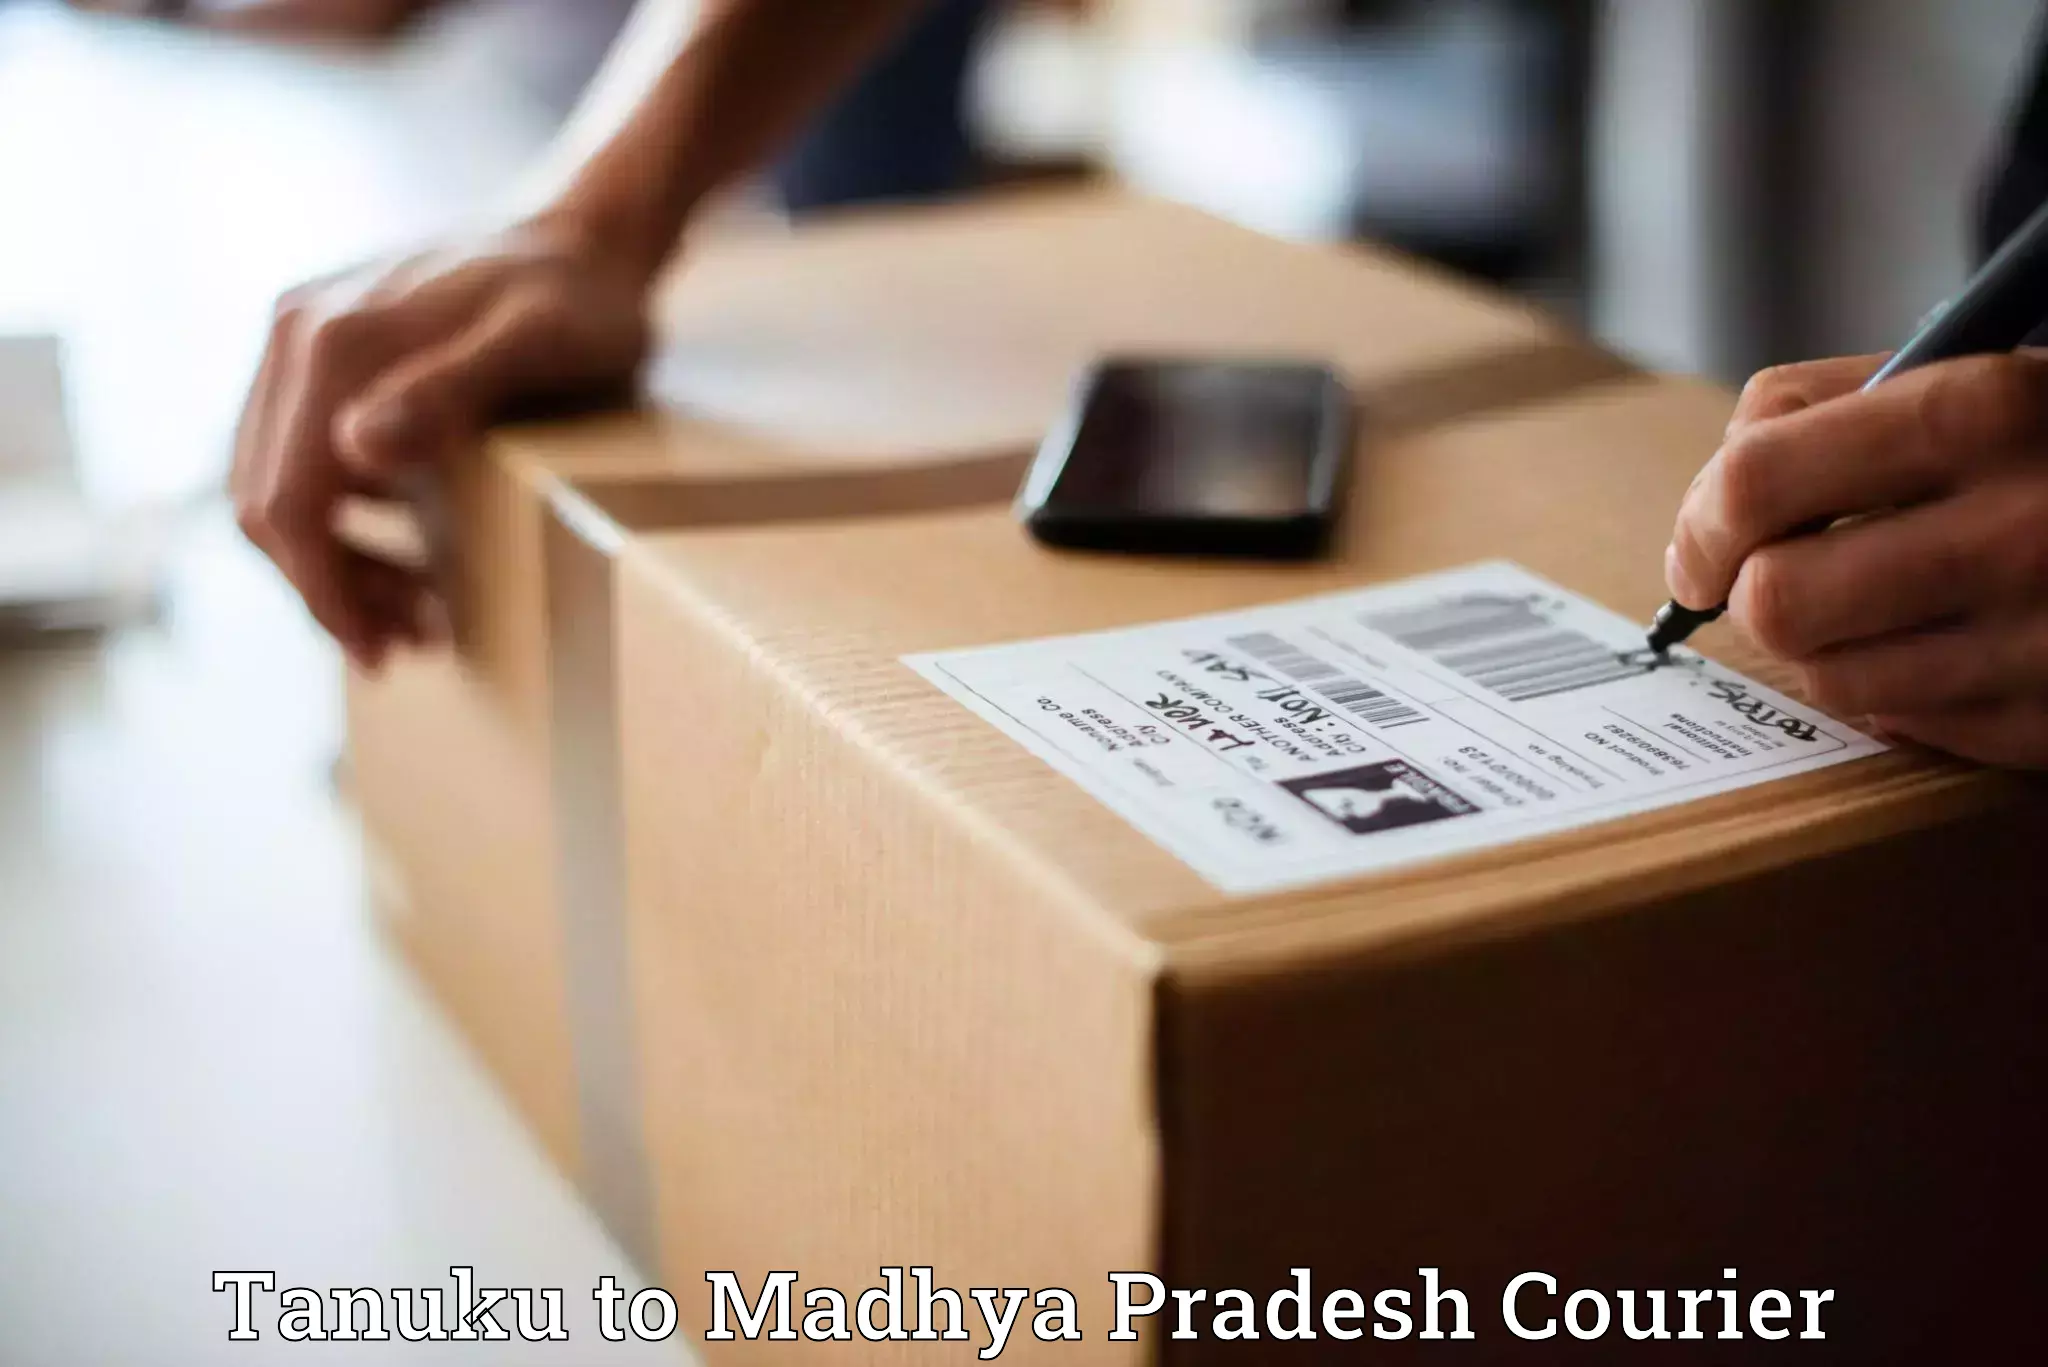 Efficient shipping platforms Tanuku to Madhya Pradesh